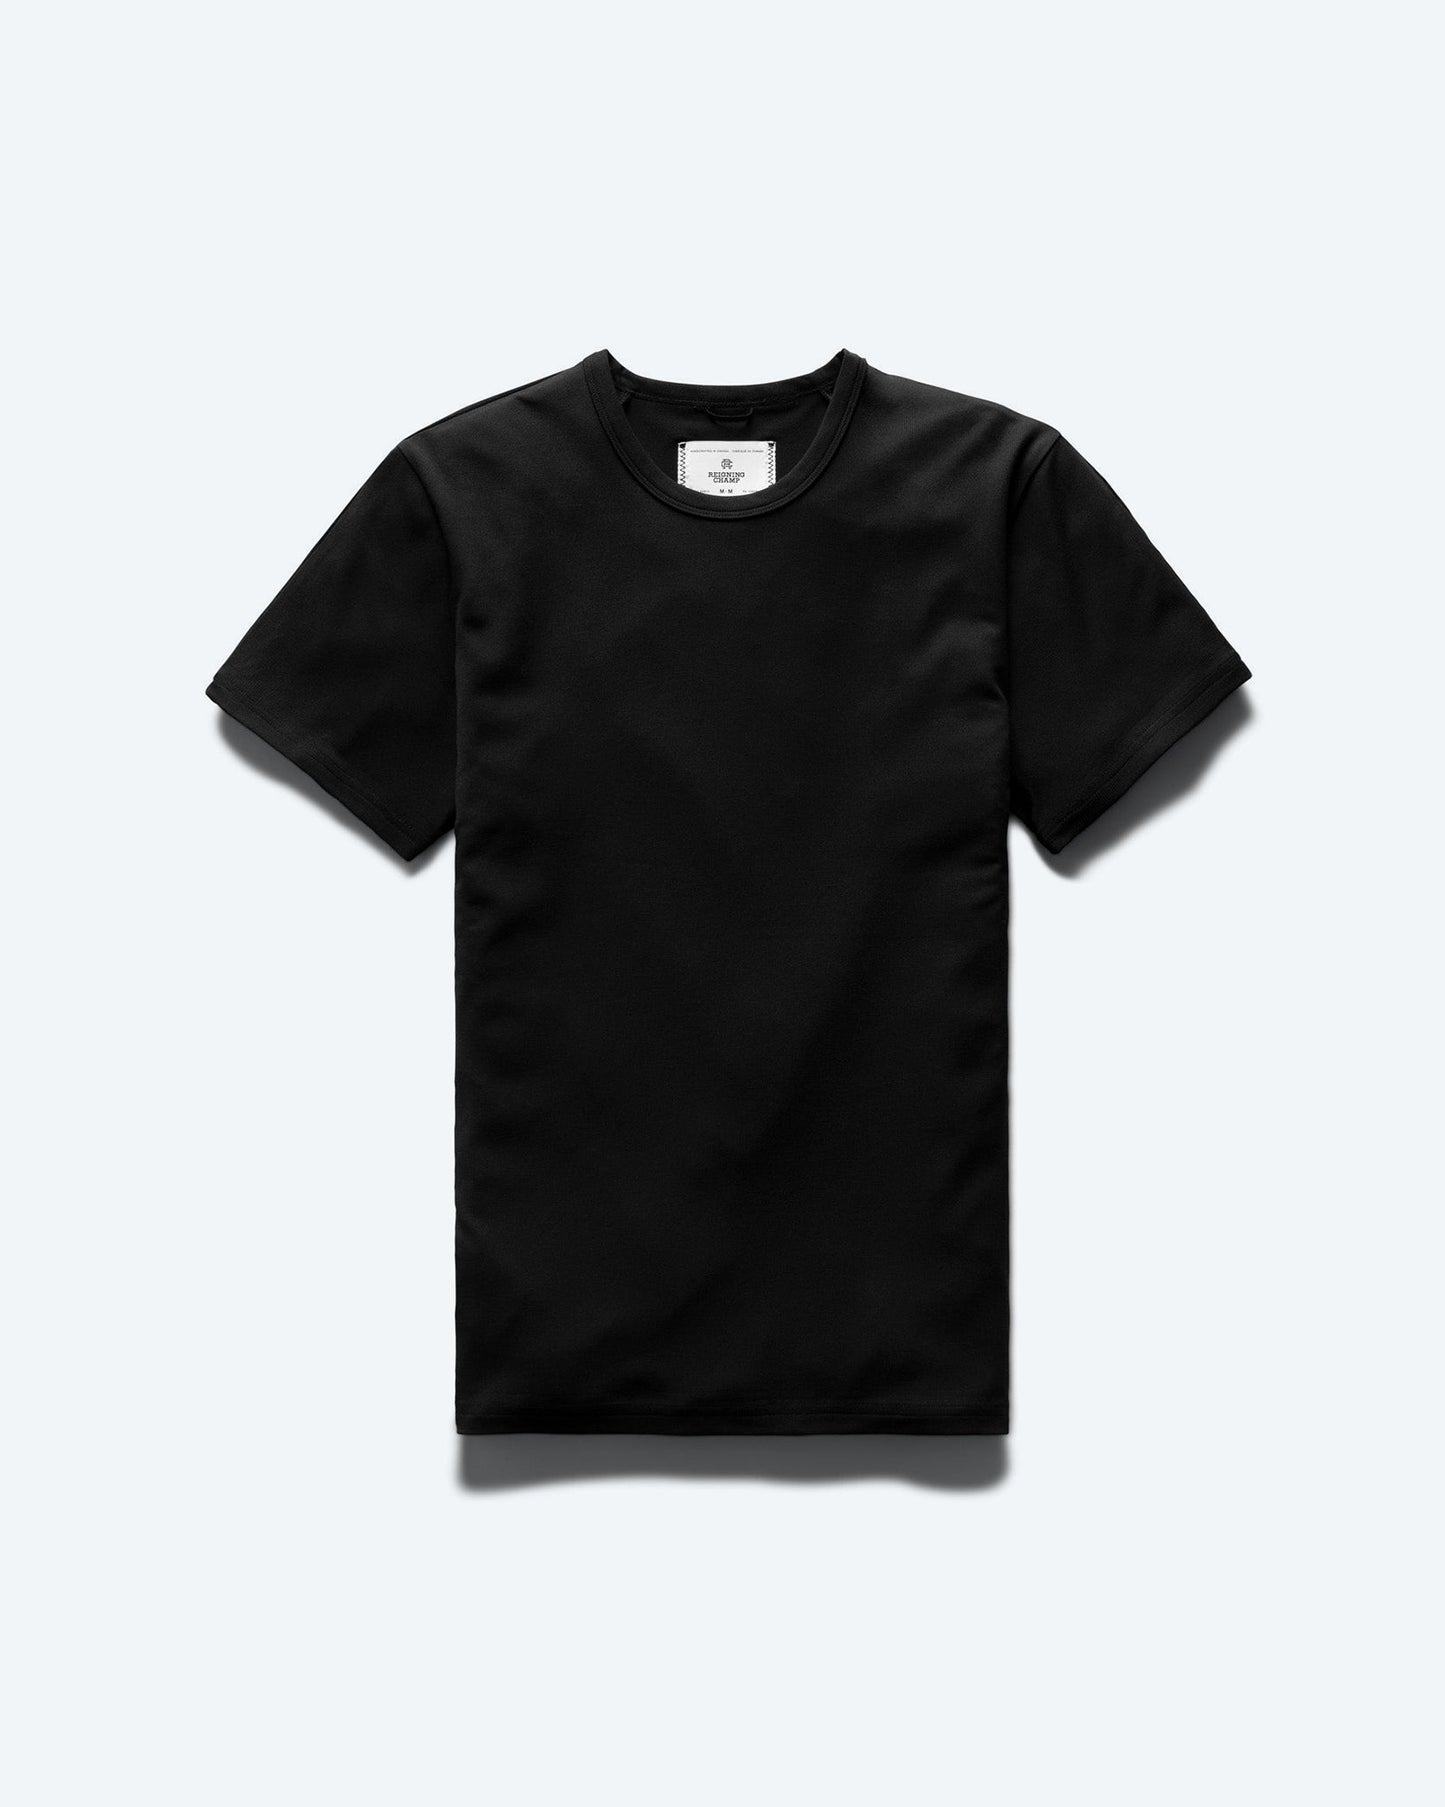 Polartec Delta™ T-shirt